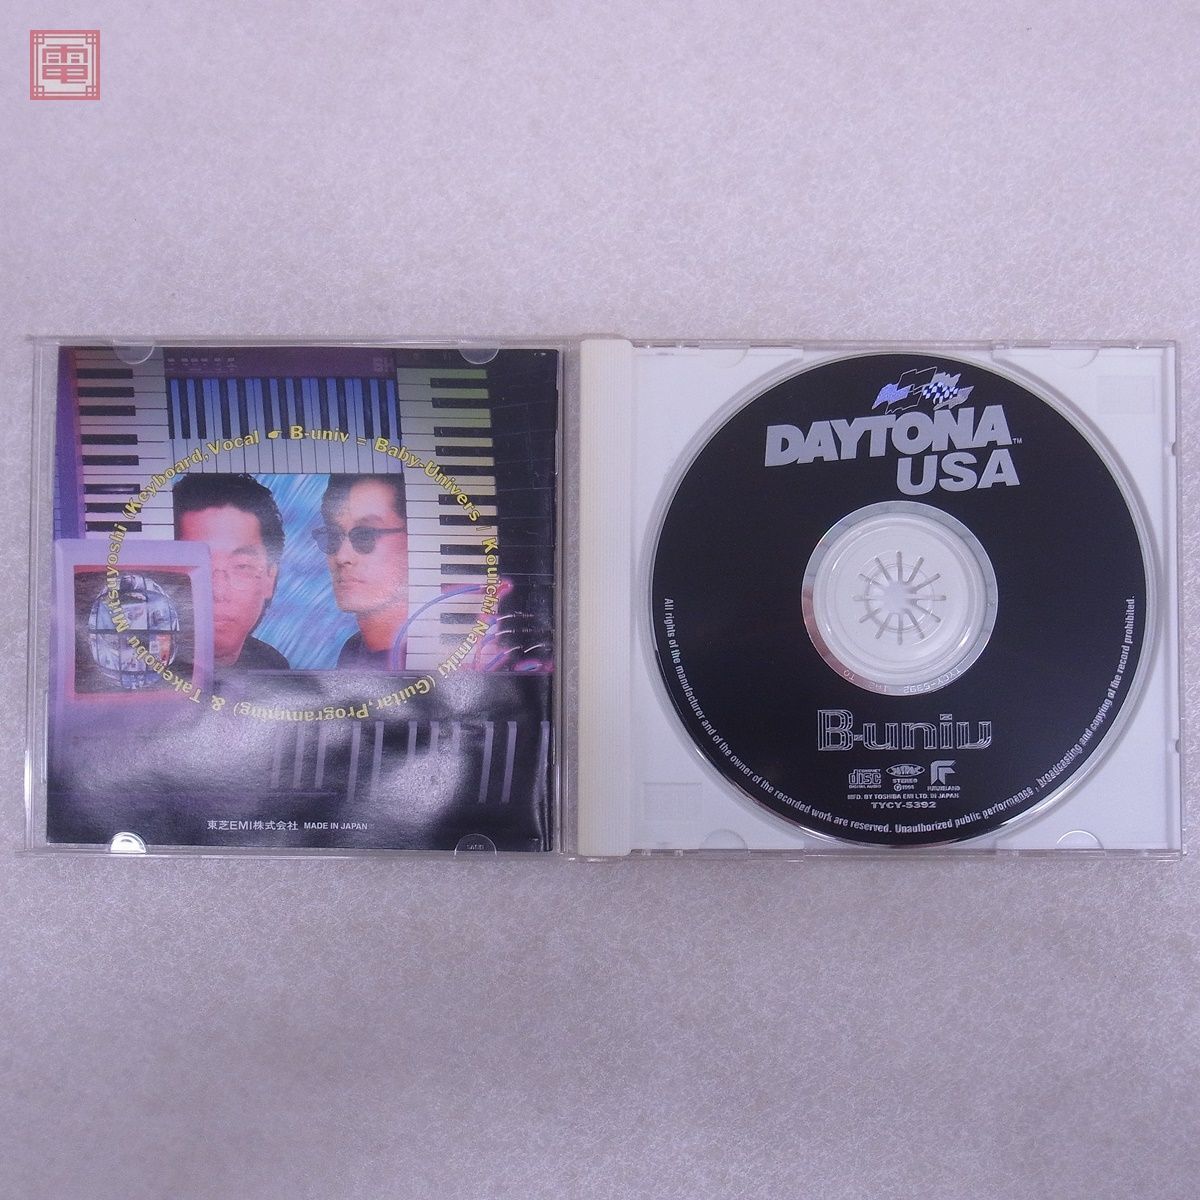  гарантия работы товар CD Daytona USA / 2 саундтрек 3 позиций комплект DAYTONA USA circuit выпуск B-univ и т.п. Sega SEGA[10